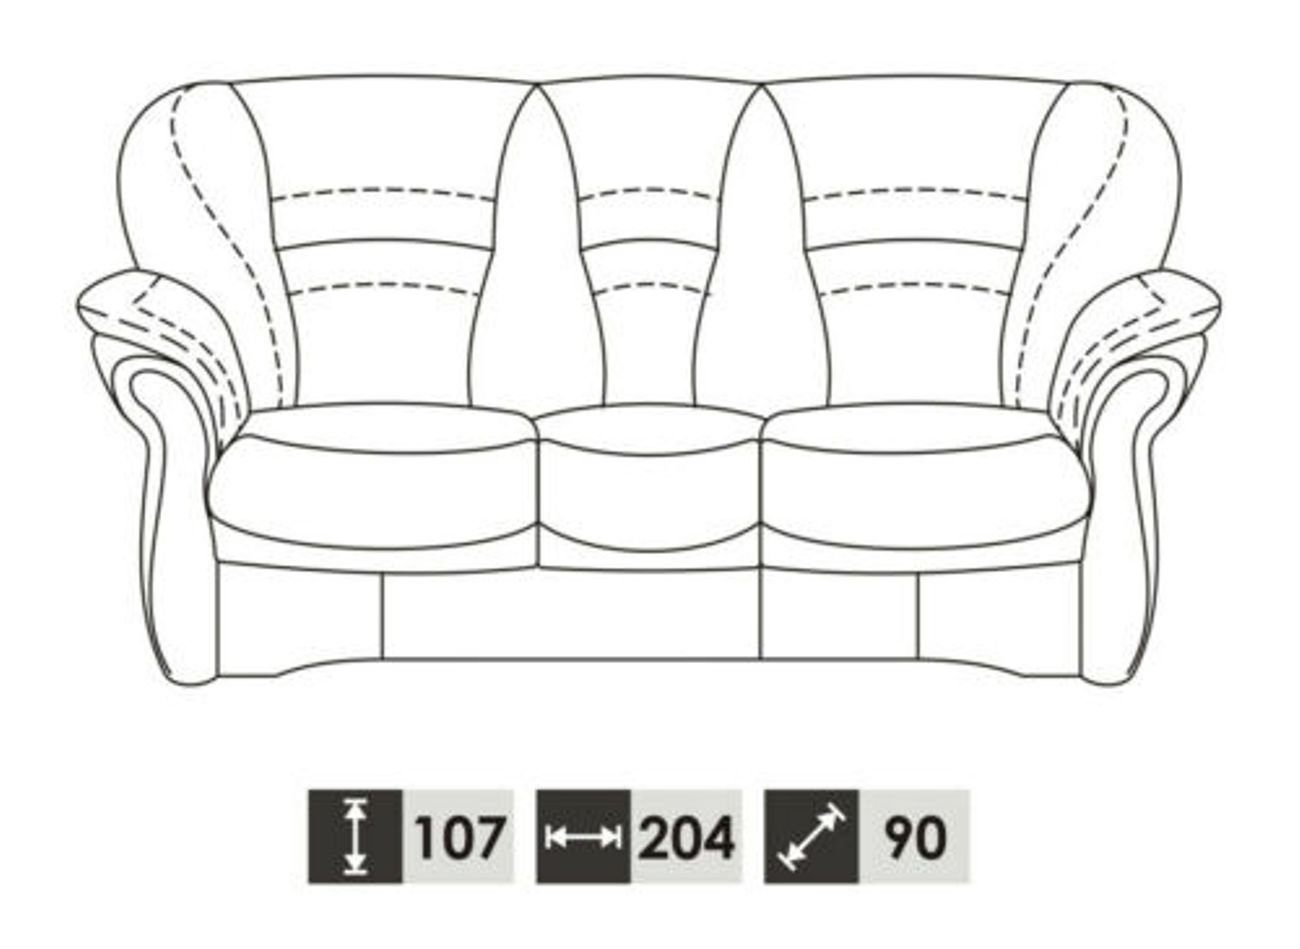 JVmoebel Sofa Klassische Garnitur Made in 3+2+1 Wohnzimmer Europe 100% Vollleder Couch